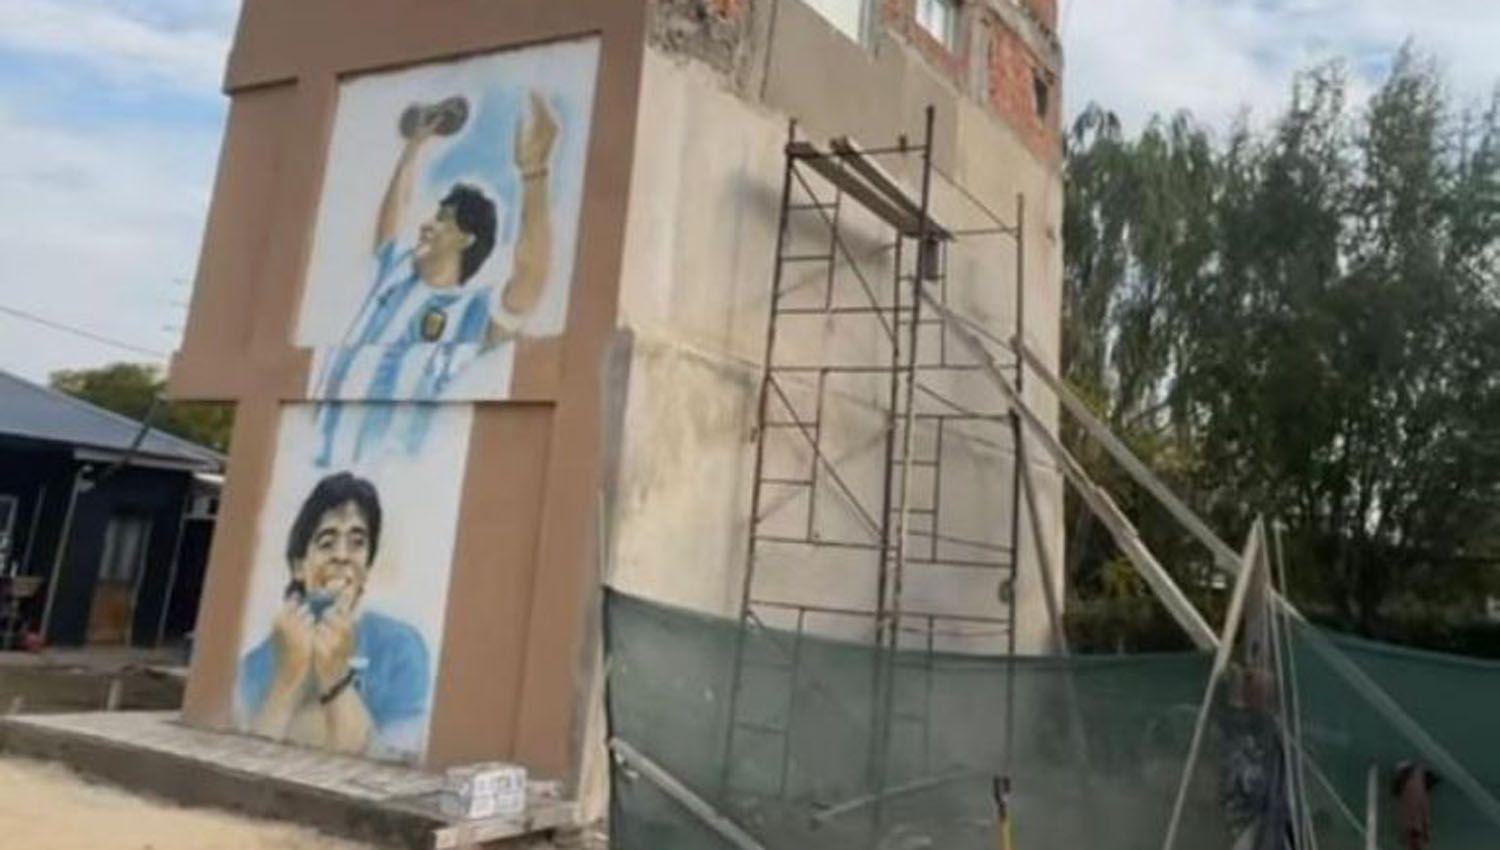 L-Gante dedicoacute un lugar especial para Maradona en su casa